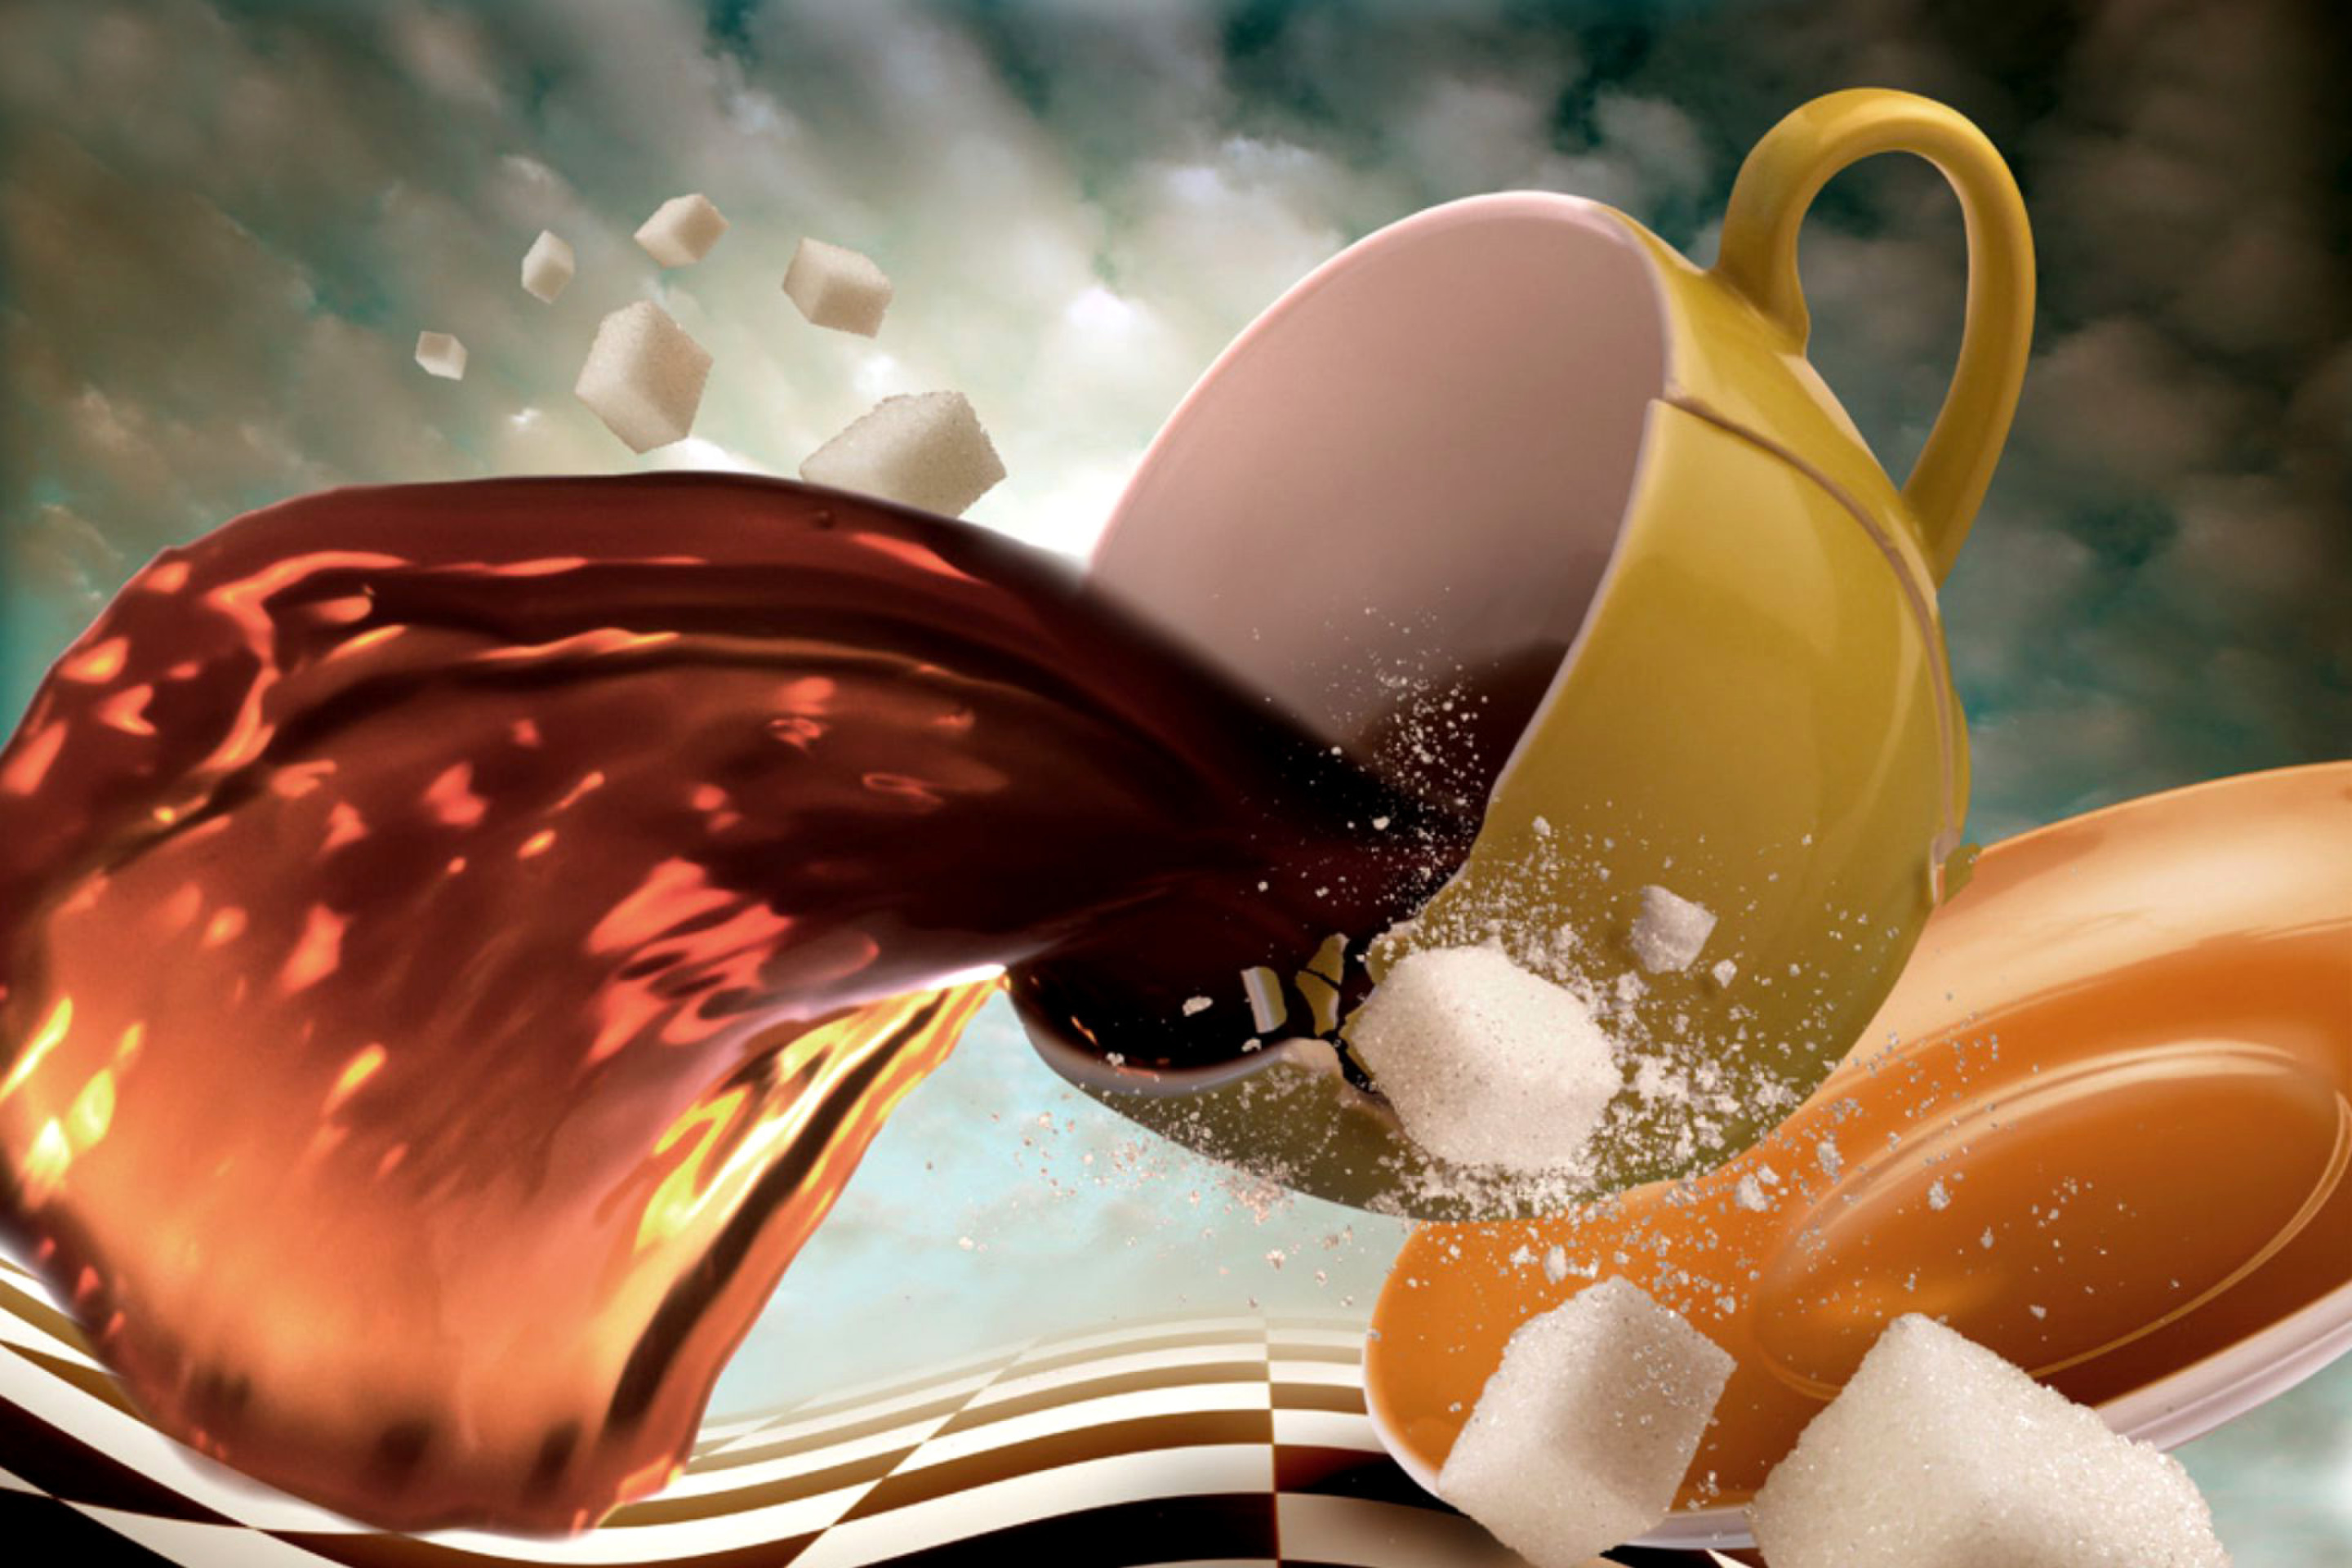 Обои Surrealism Coffee Cup with Sugar cubes 2880x1920